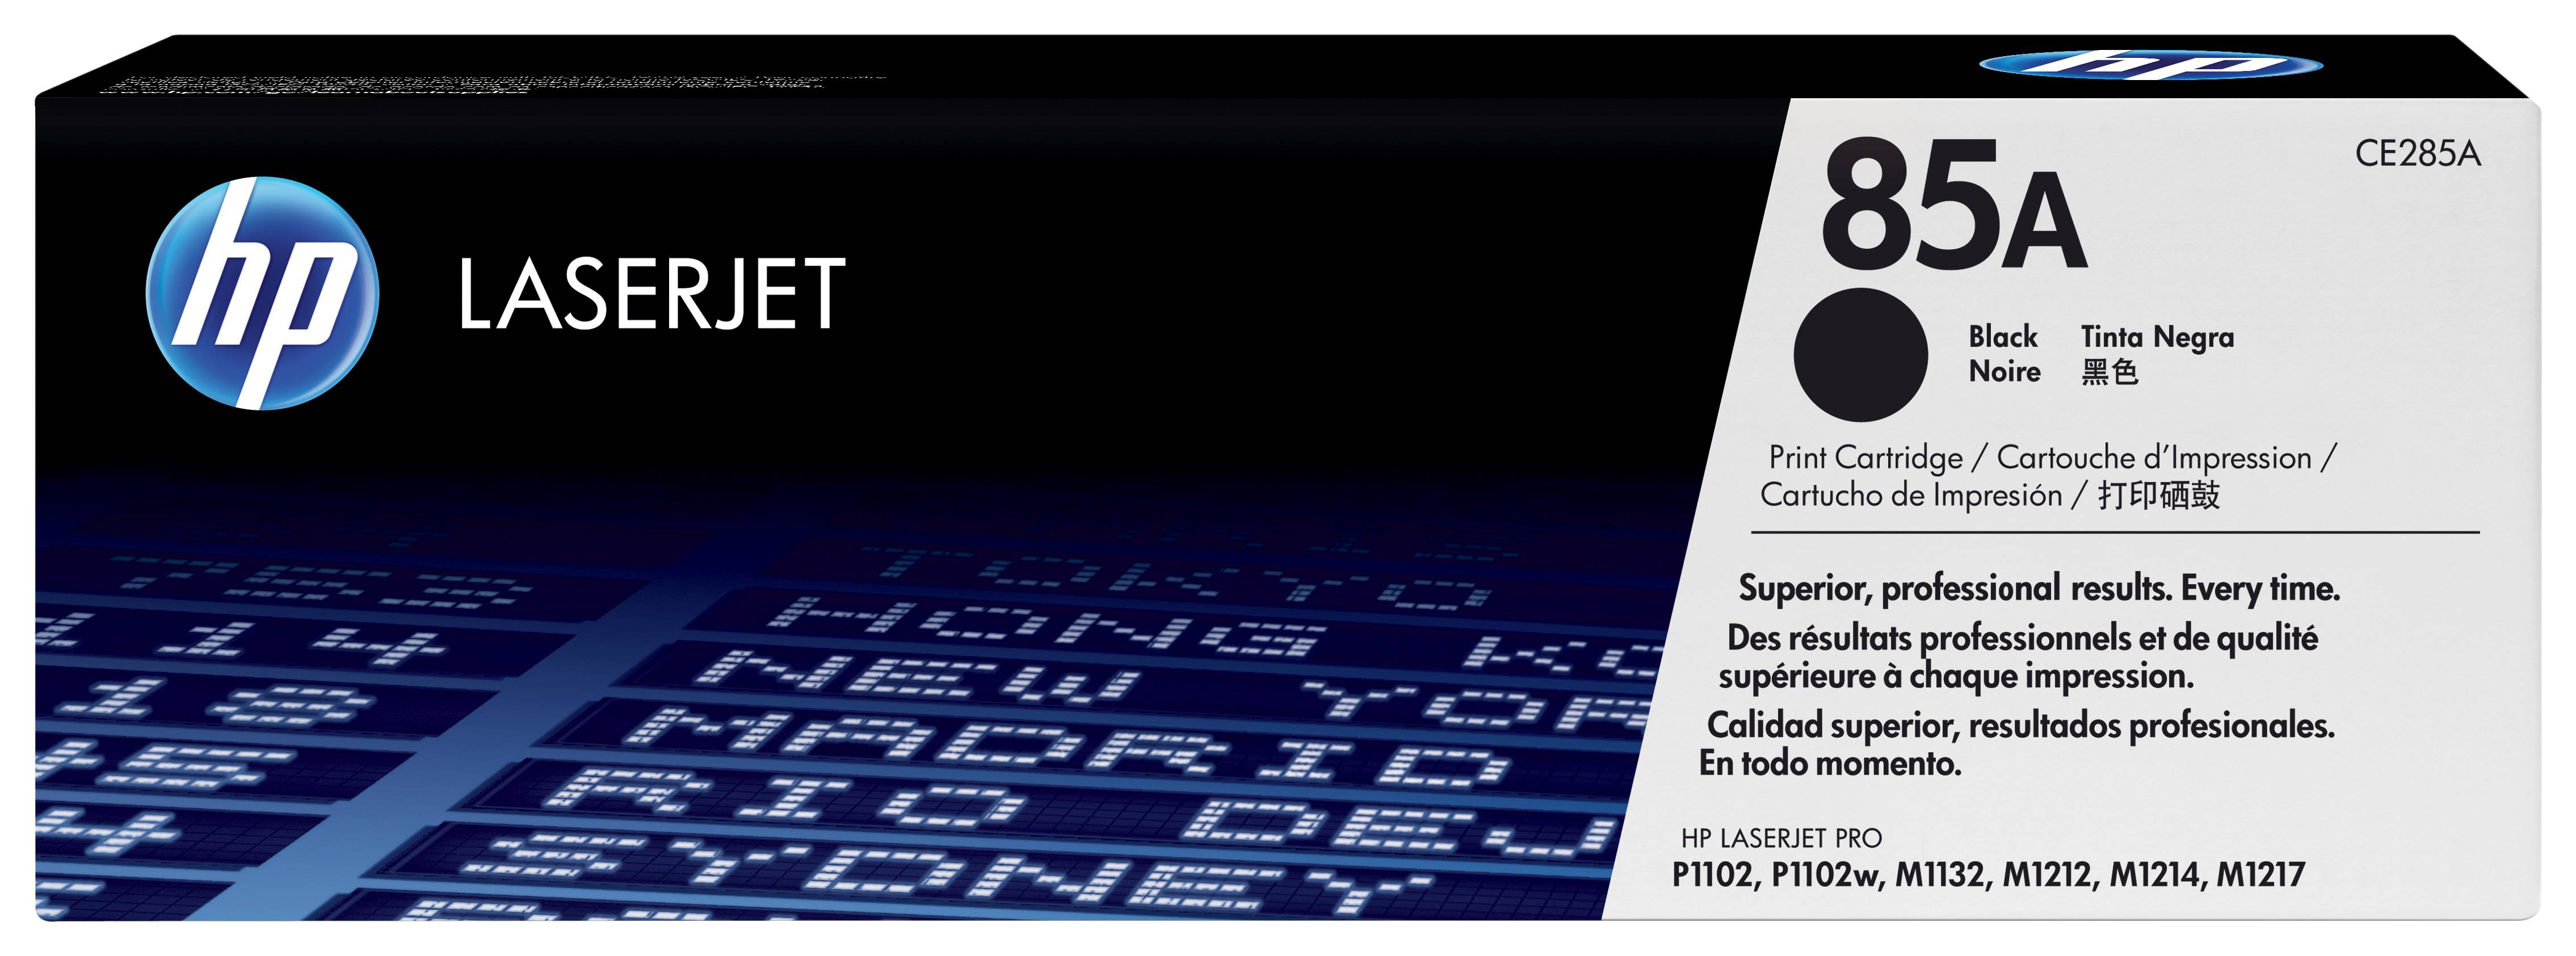 Rca Informatique - image du produit : TONER CARTRIDGE 85A BLACK FOR HP LASERJET